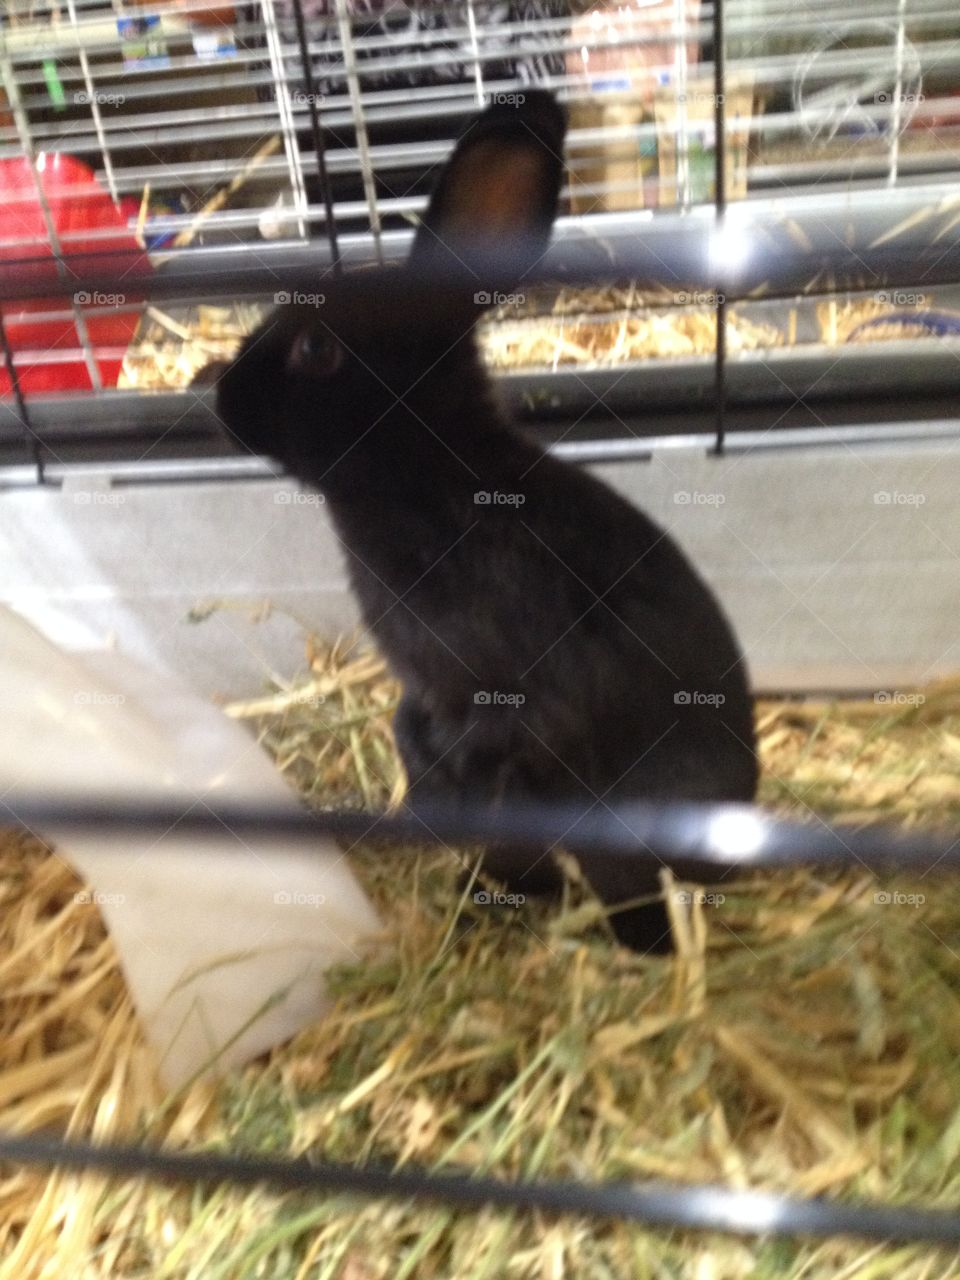 Black bunny